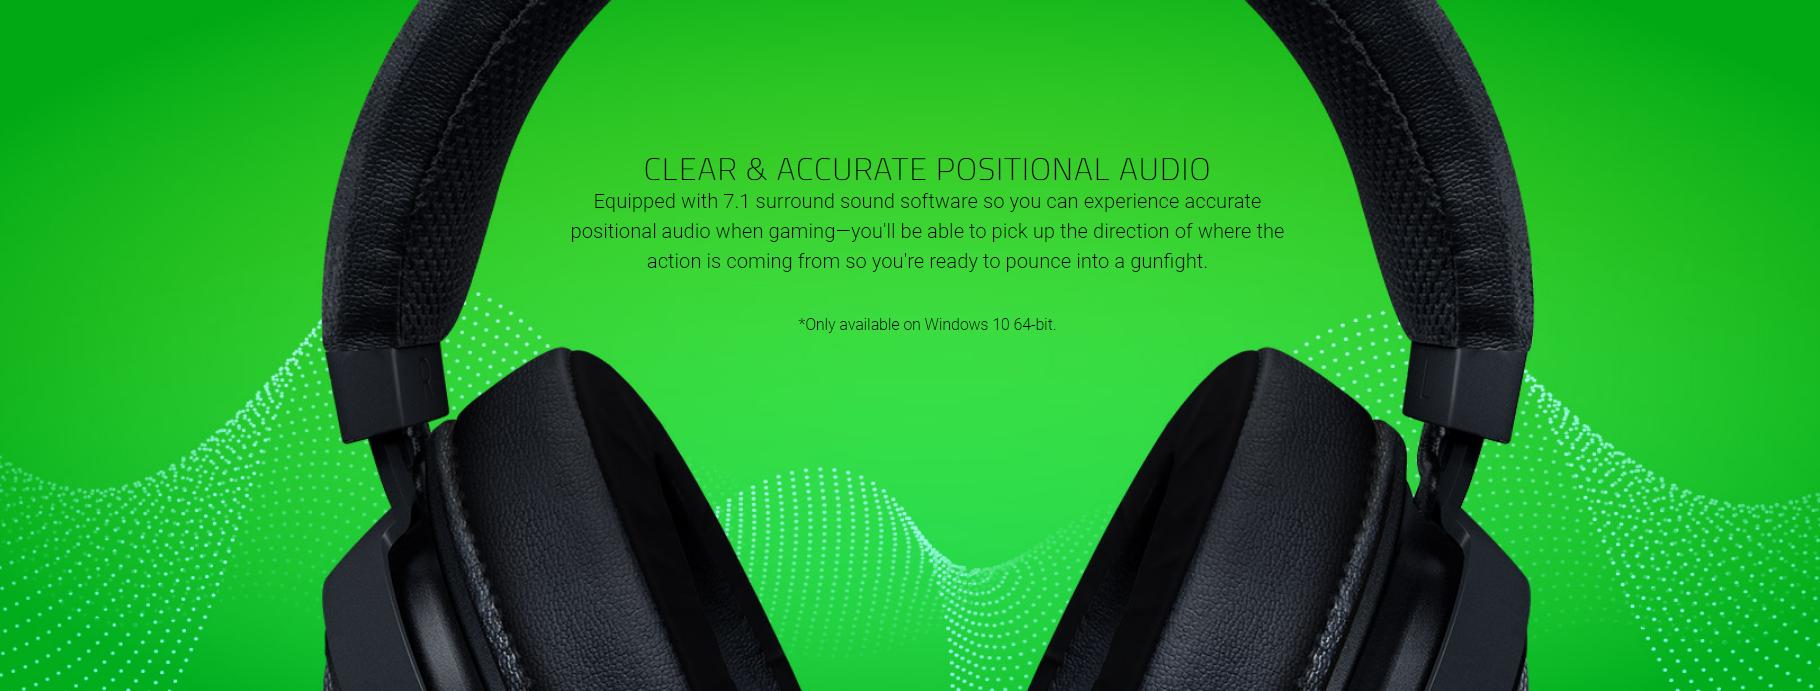 Tai nghe Razer Kraken Multi Platform Wired Gaming Headset Quartz RZ04-02830300-R3M1 tích hợp giả lập âm thanh vòm